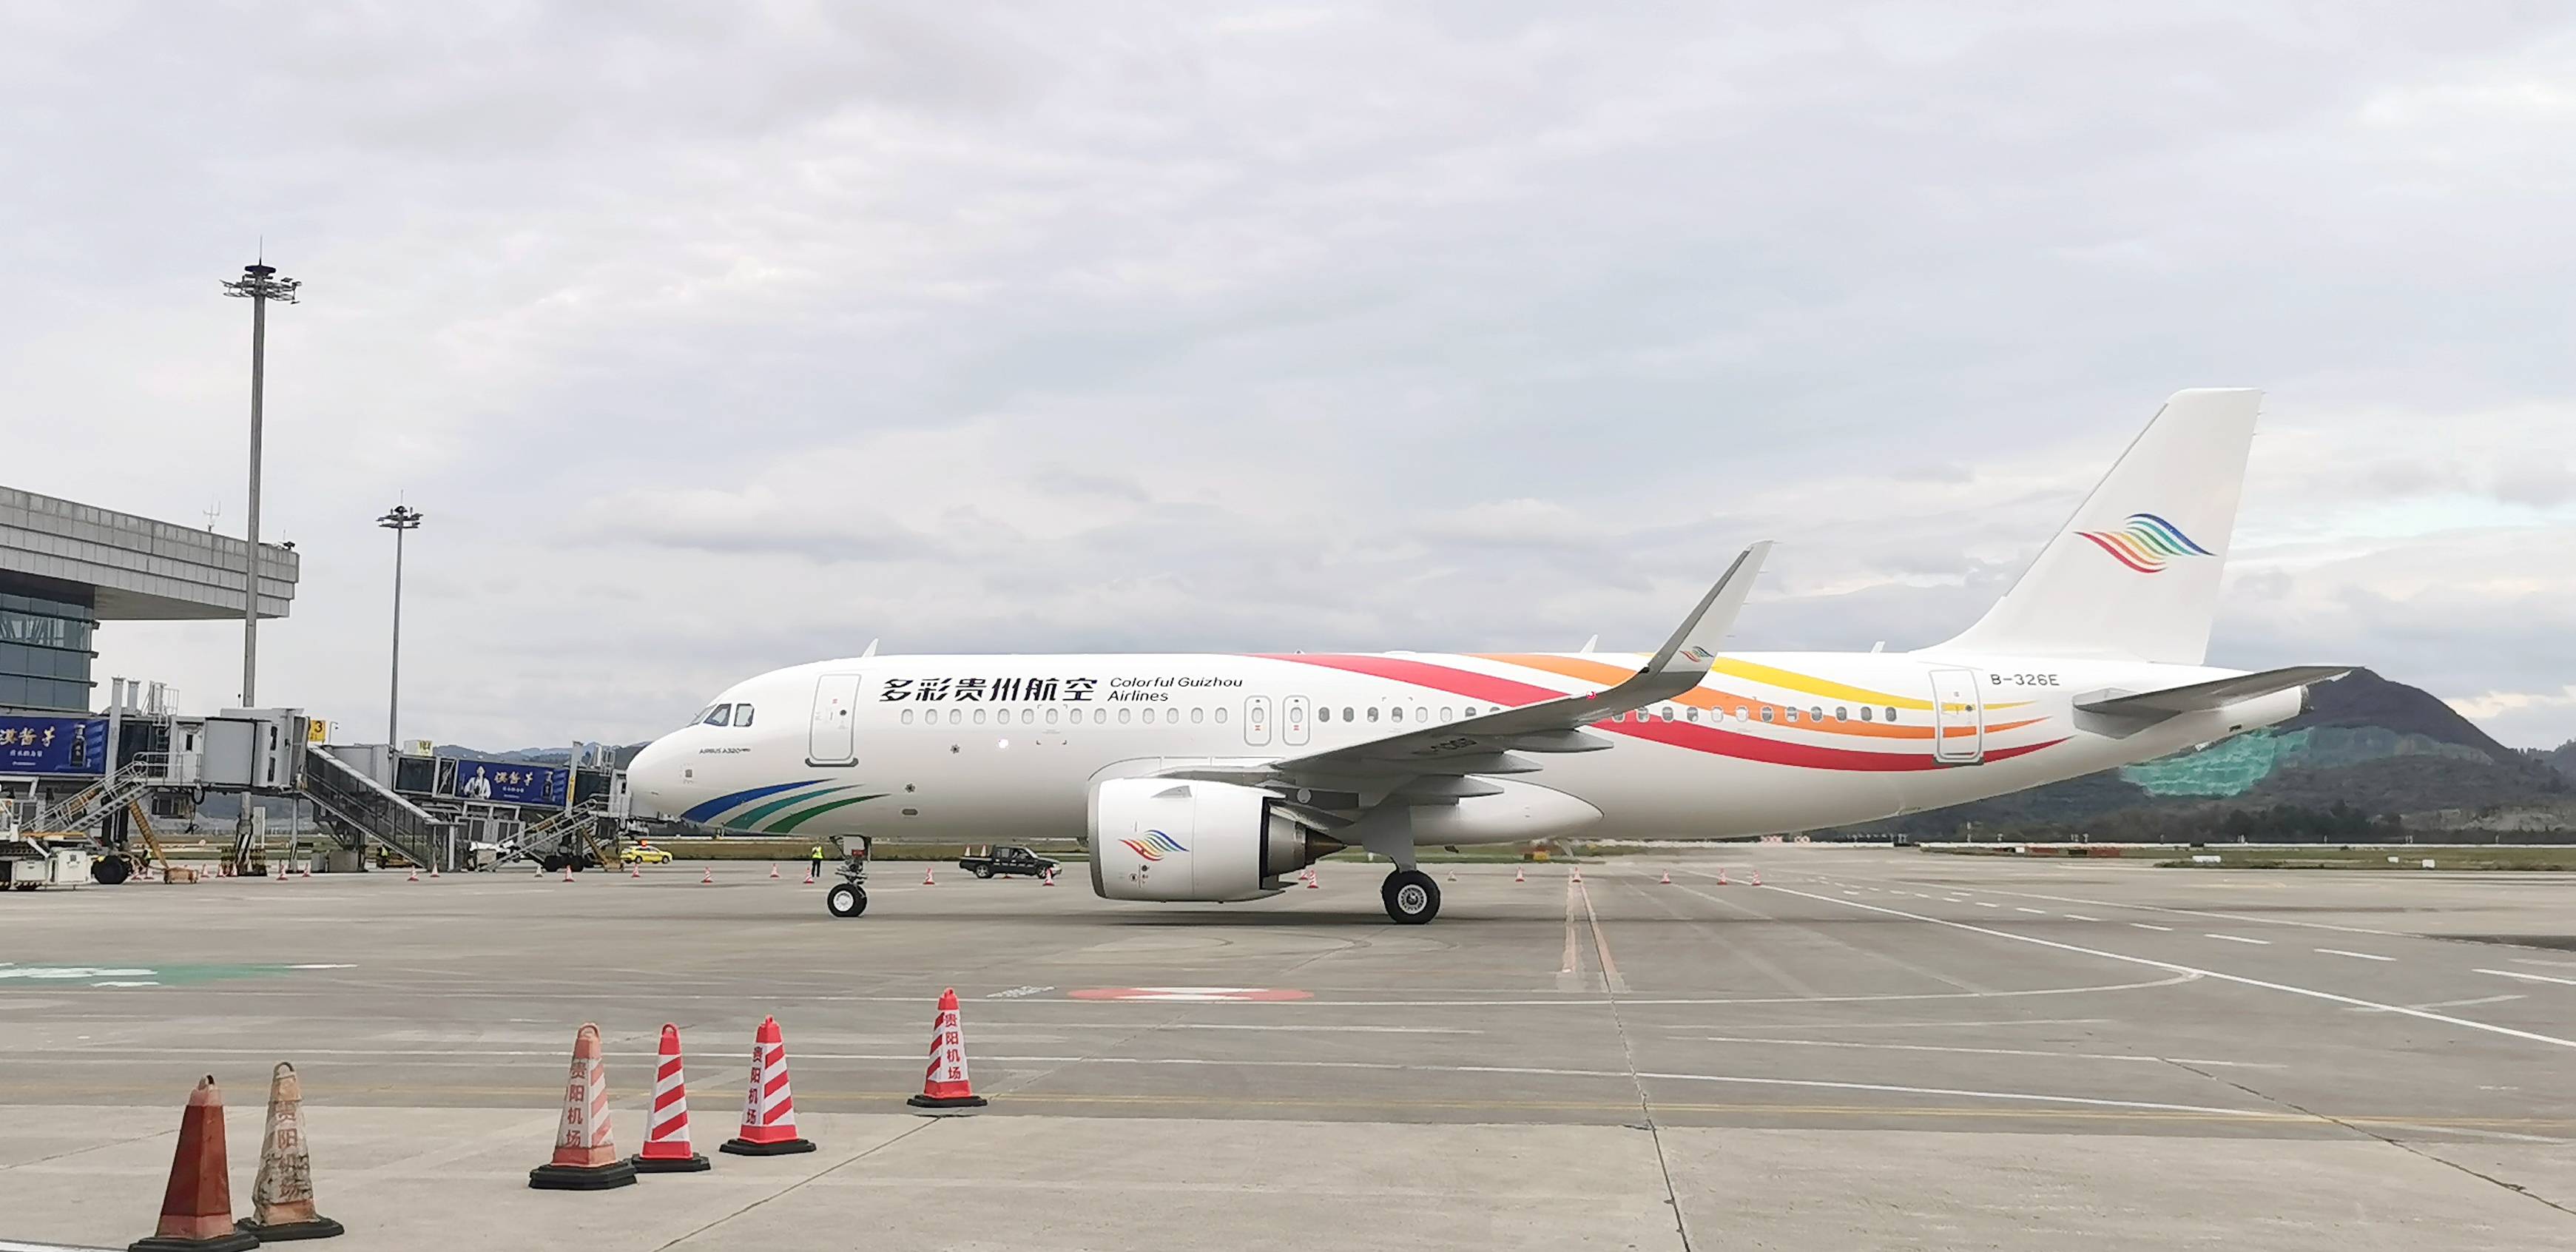 第六架多彩贵州航空有限公司顺利引进a320neo飞机